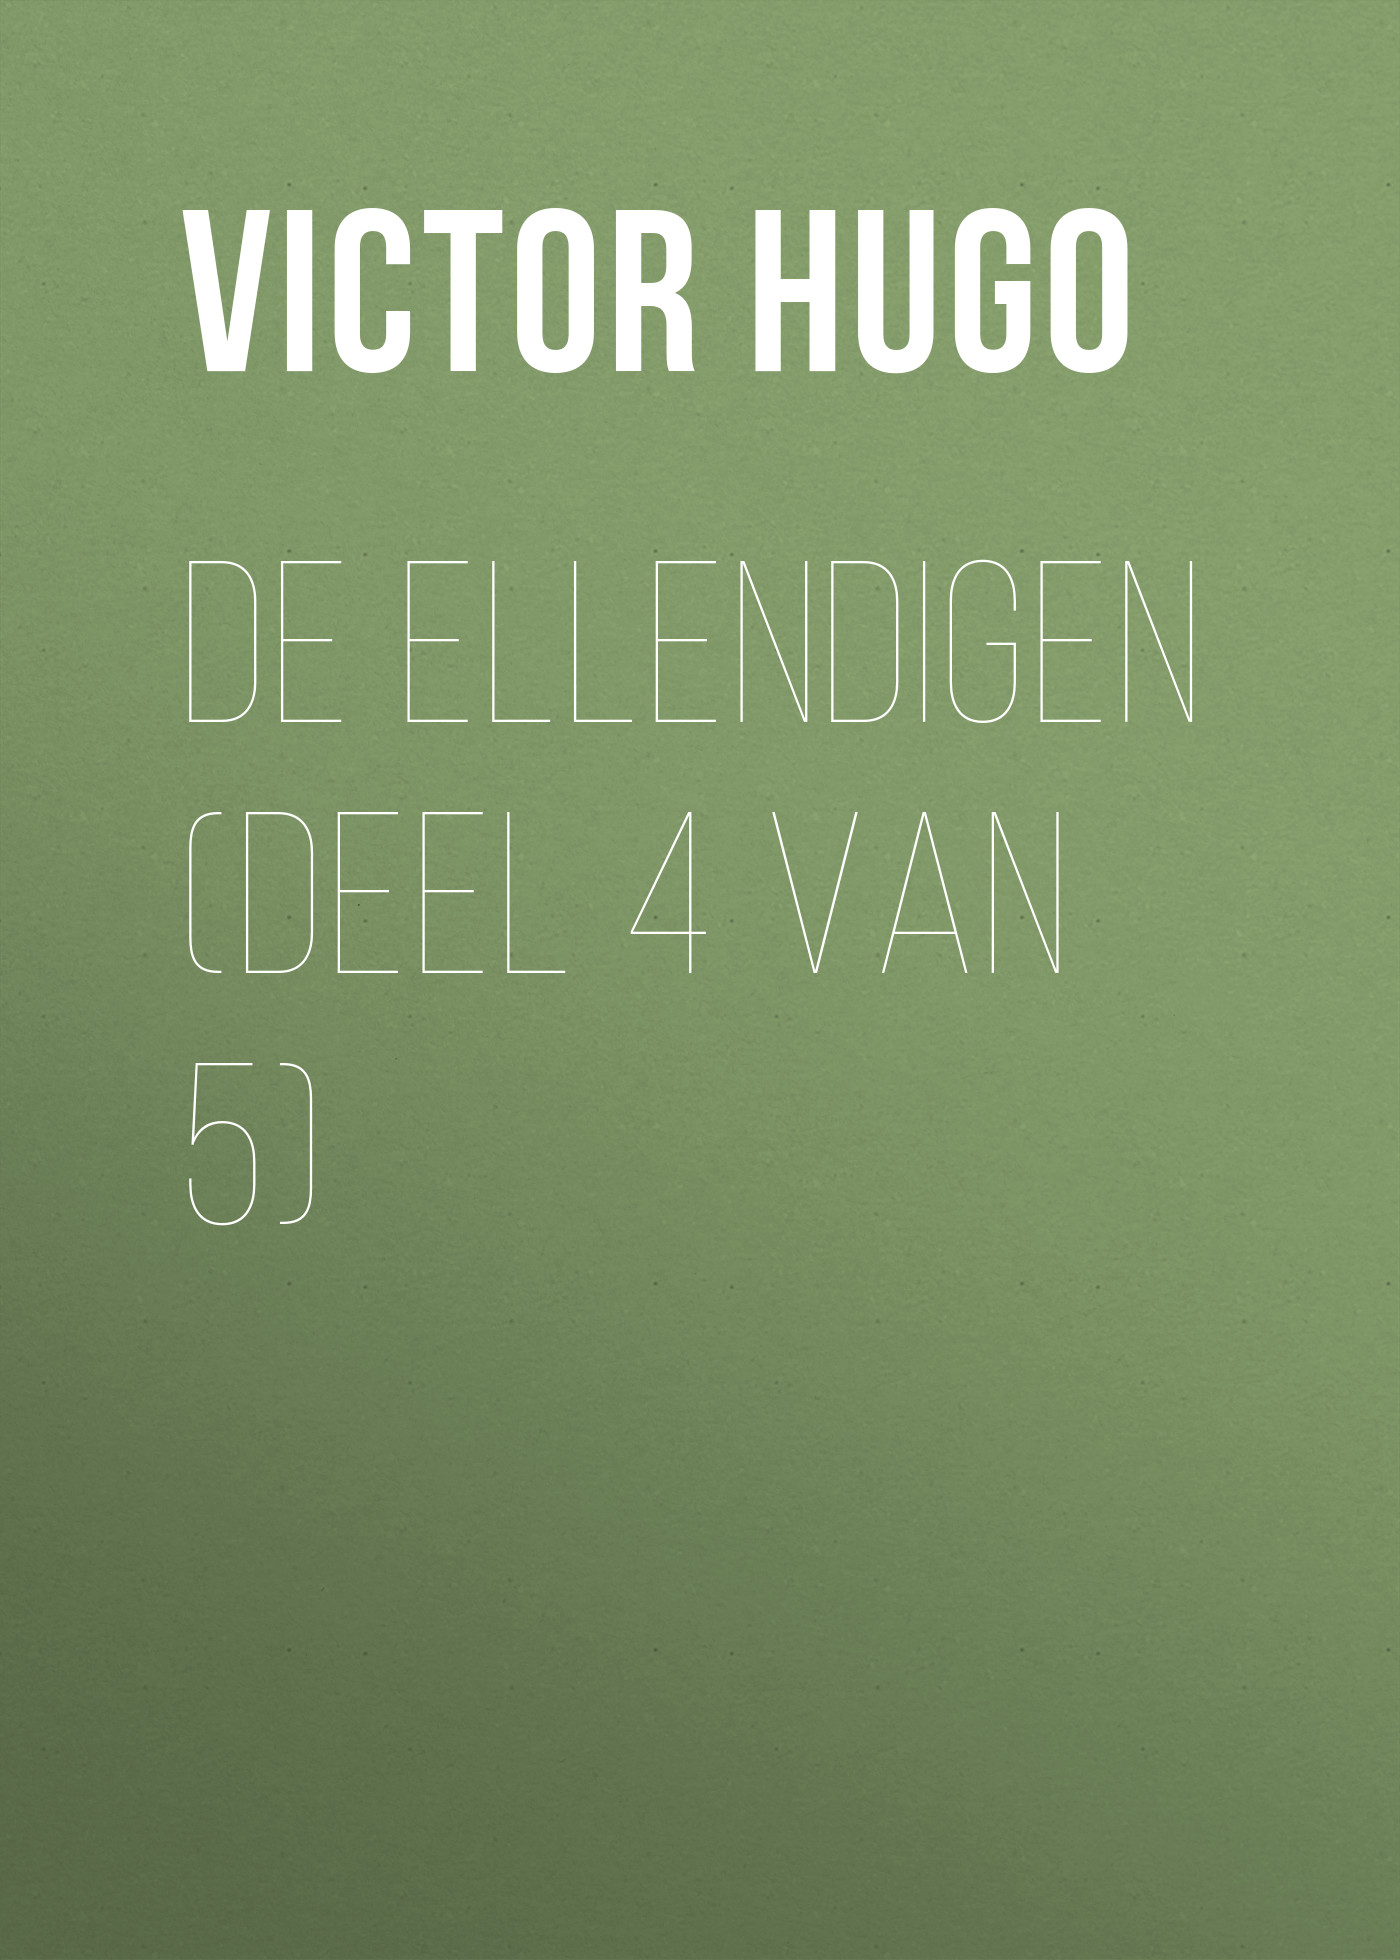 Книга De Ellendigen (Deel 4 van 5) из серии , созданная Victor Hugo, может относится к жанру Литература 19 века, Зарубежная старинная литература, Зарубежная классика. Стоимость электронной книги De Ellendigen (Deel 4 van 5) с идентификатором 25230164 составляет 0 руб.